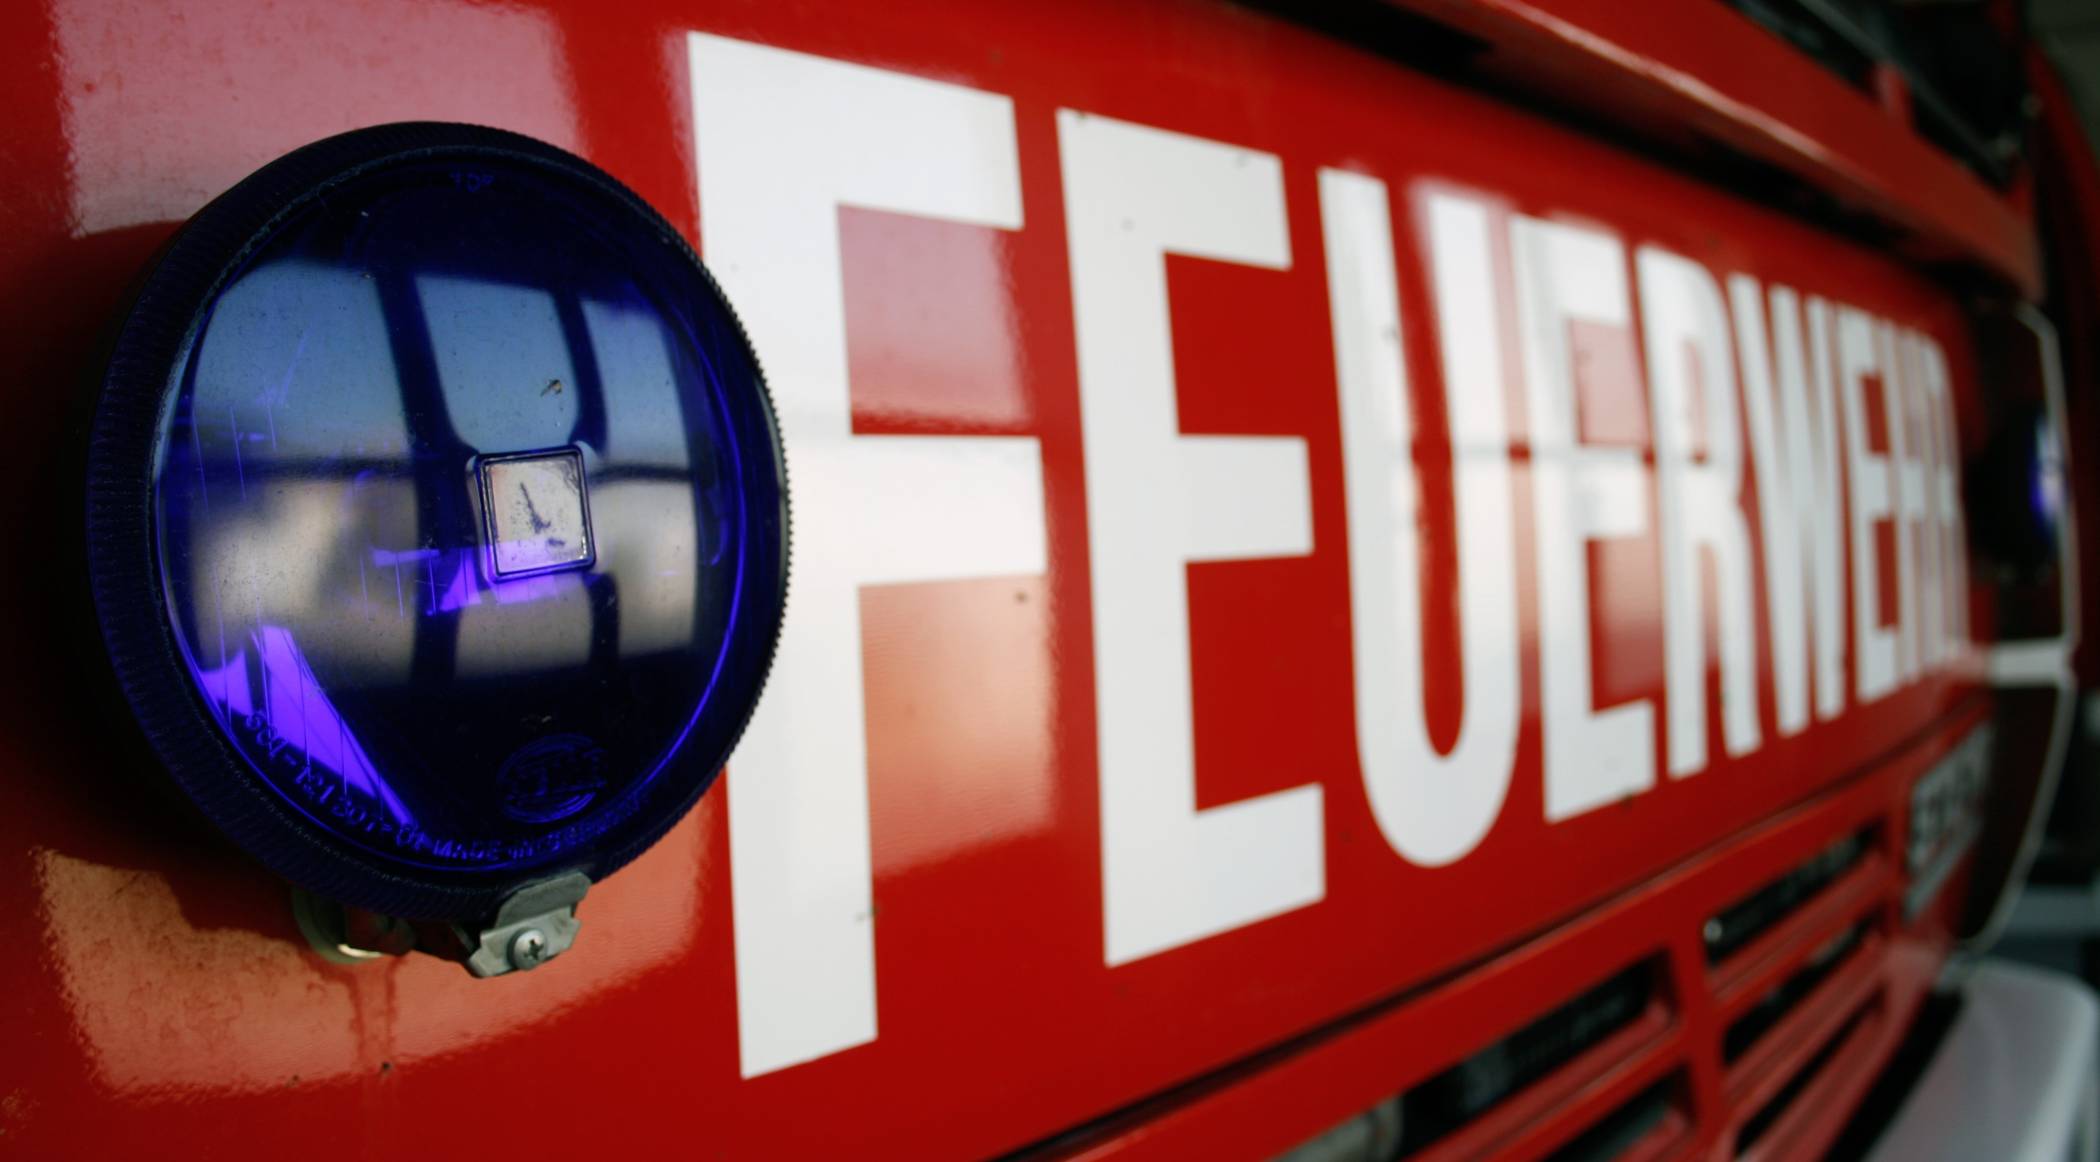   Papiercontainerbrand an der Hammerstraße: Polizei ermittelt wegen Brandstiftung